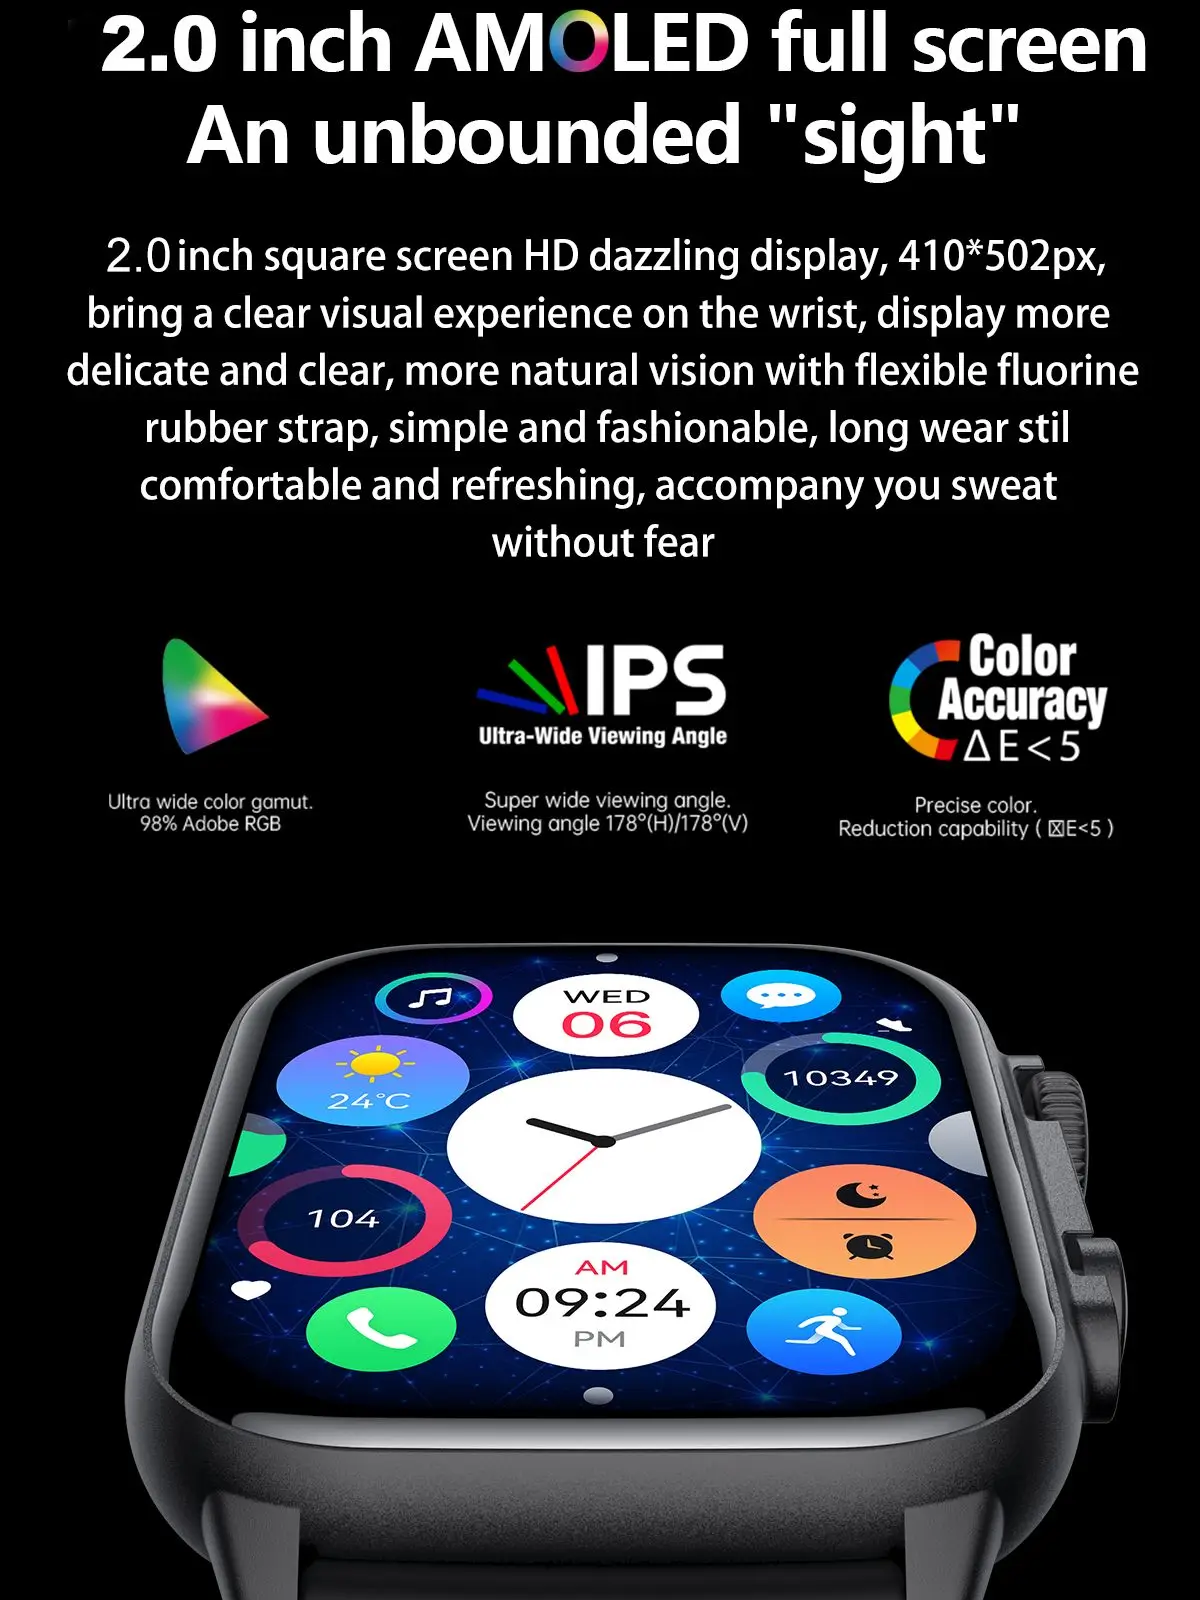 2023 HK95 Ултра Умни Часовници Мъжки Дамски NFC AMOLED Екран на Смарт Часовници Bluetooth Обадете на Кислород в Кръвта, сърдечната Честота Спортни Водоустойчиви Часовници